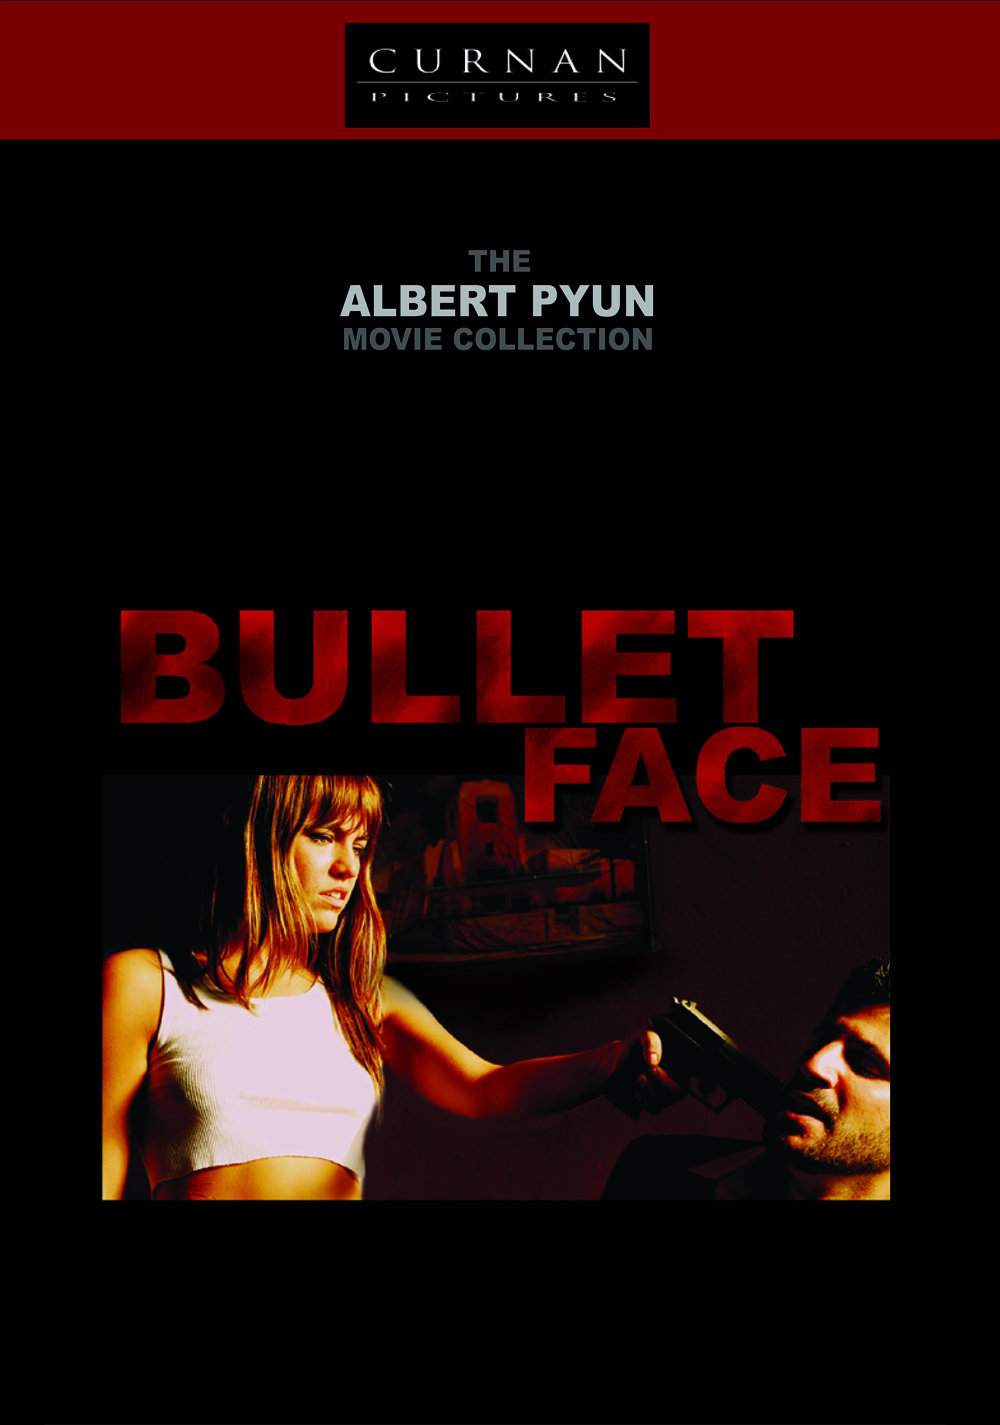 Bulletface